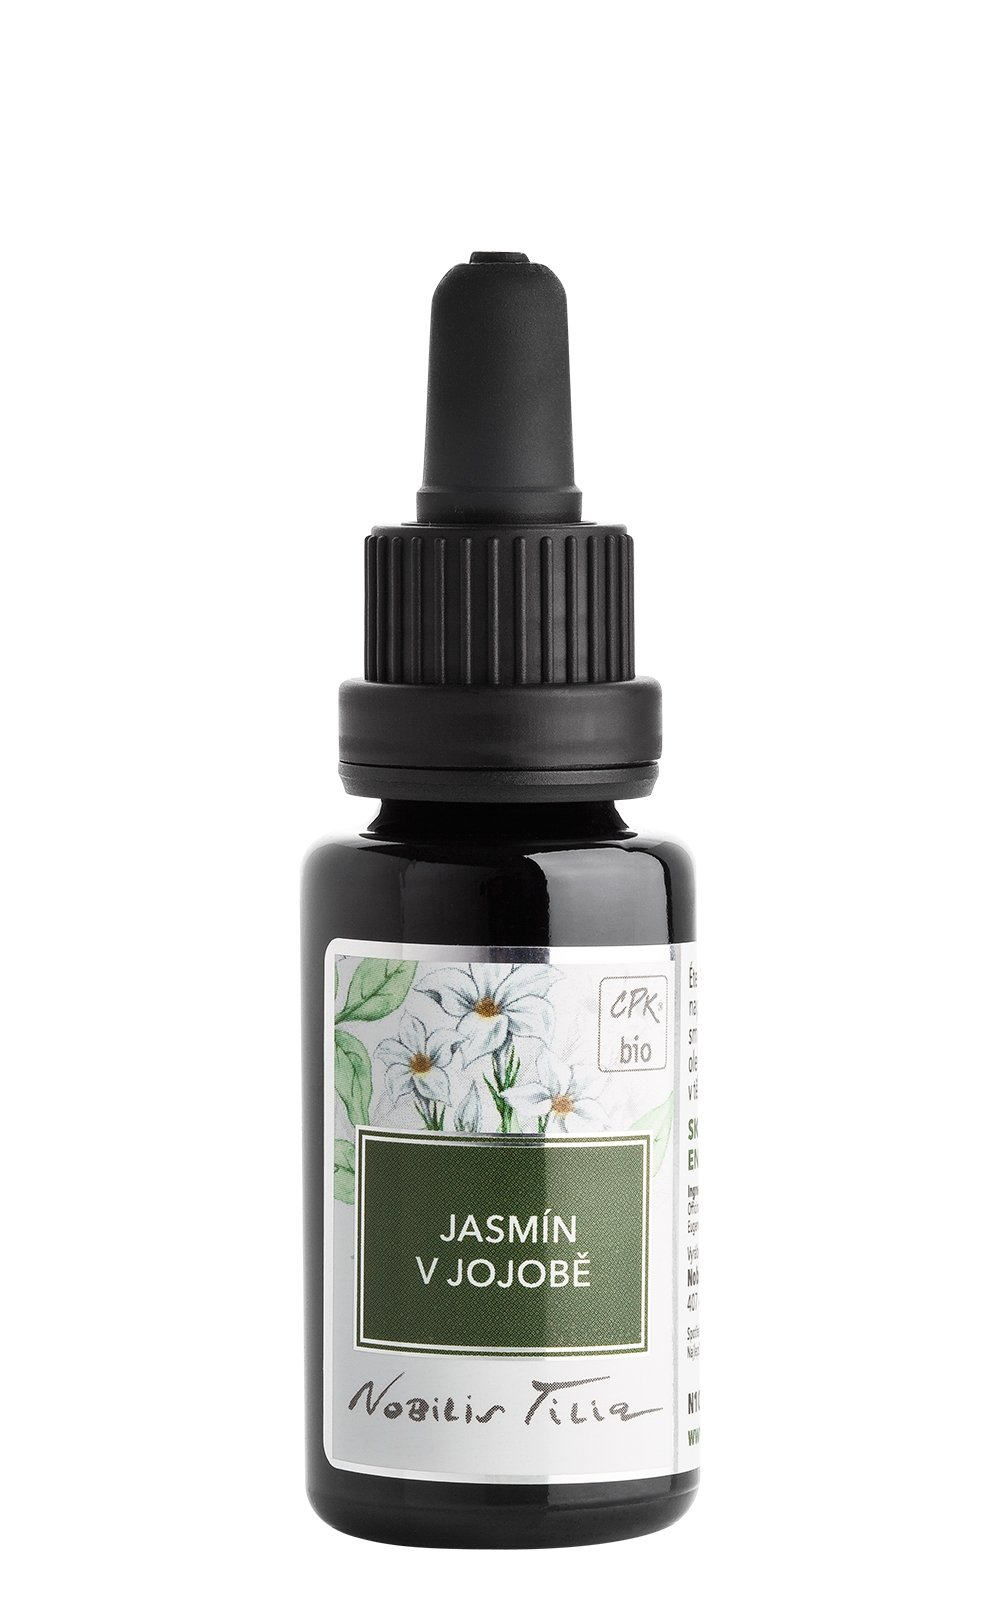 Jasmín v jojobovém oleji: 20 ml